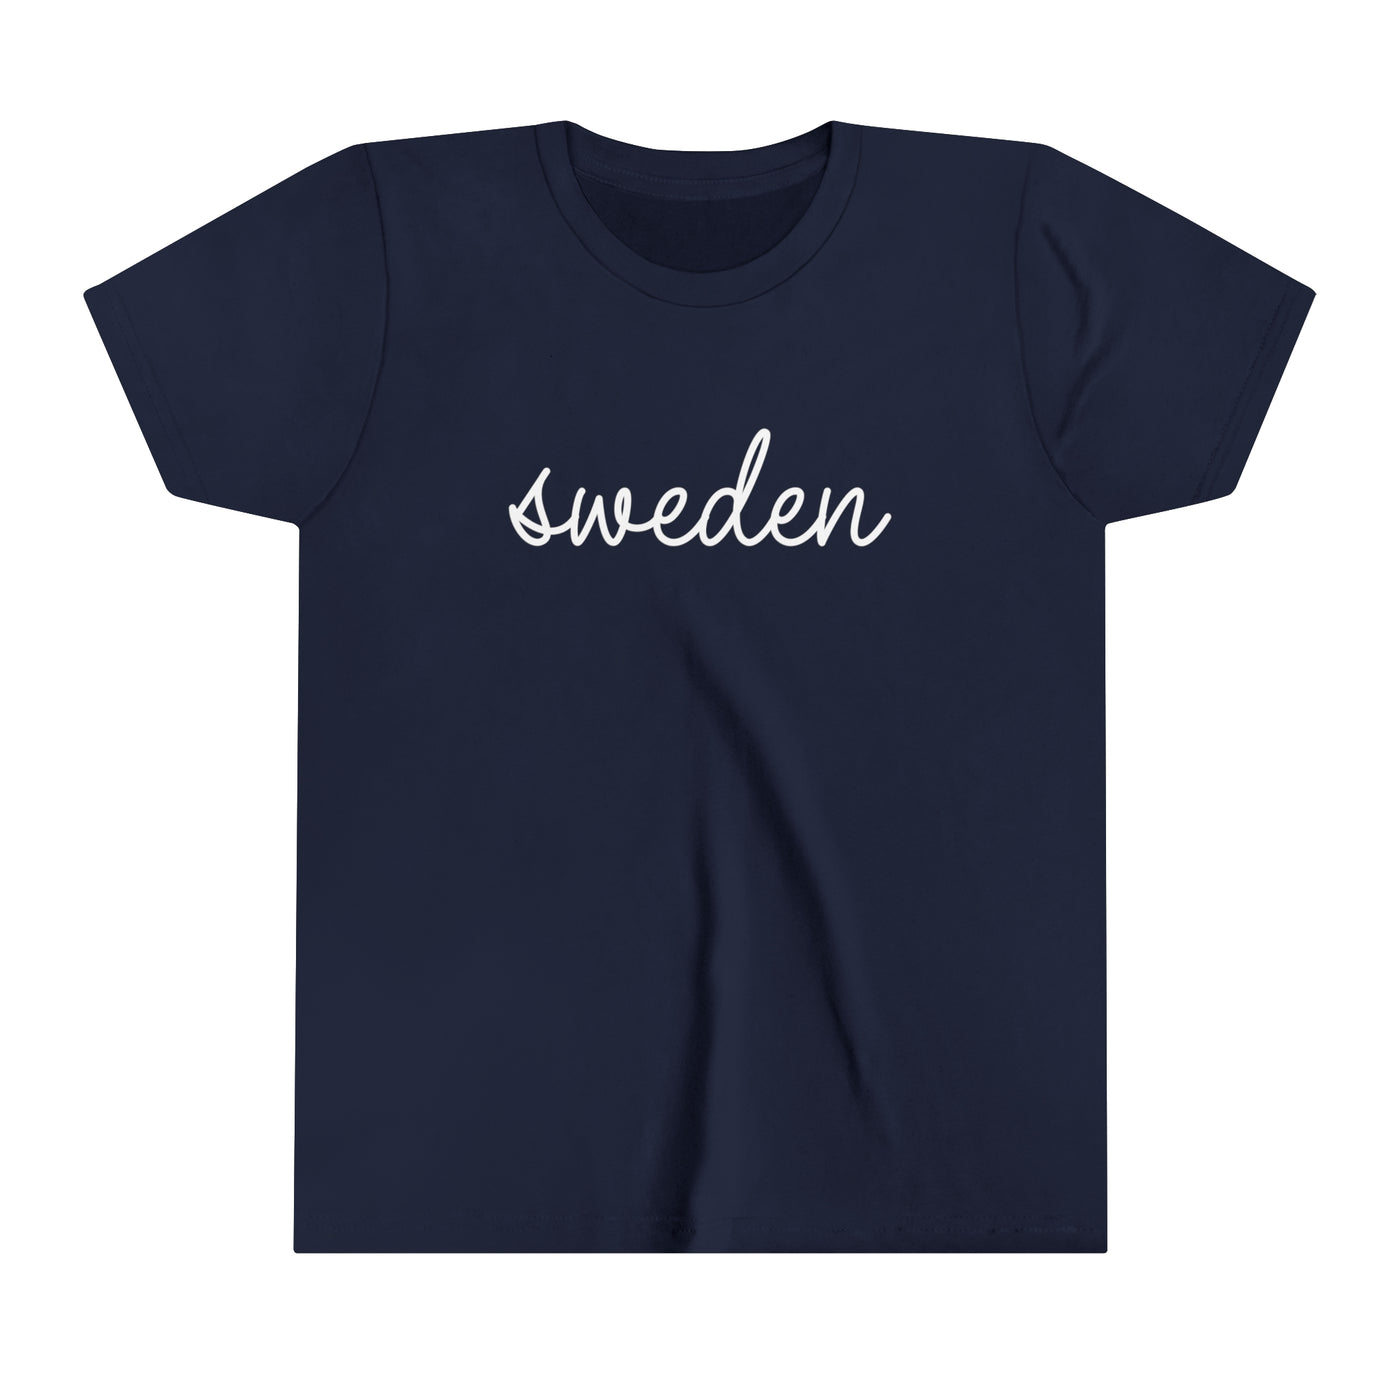 Sweden Script Kids T-Shirt